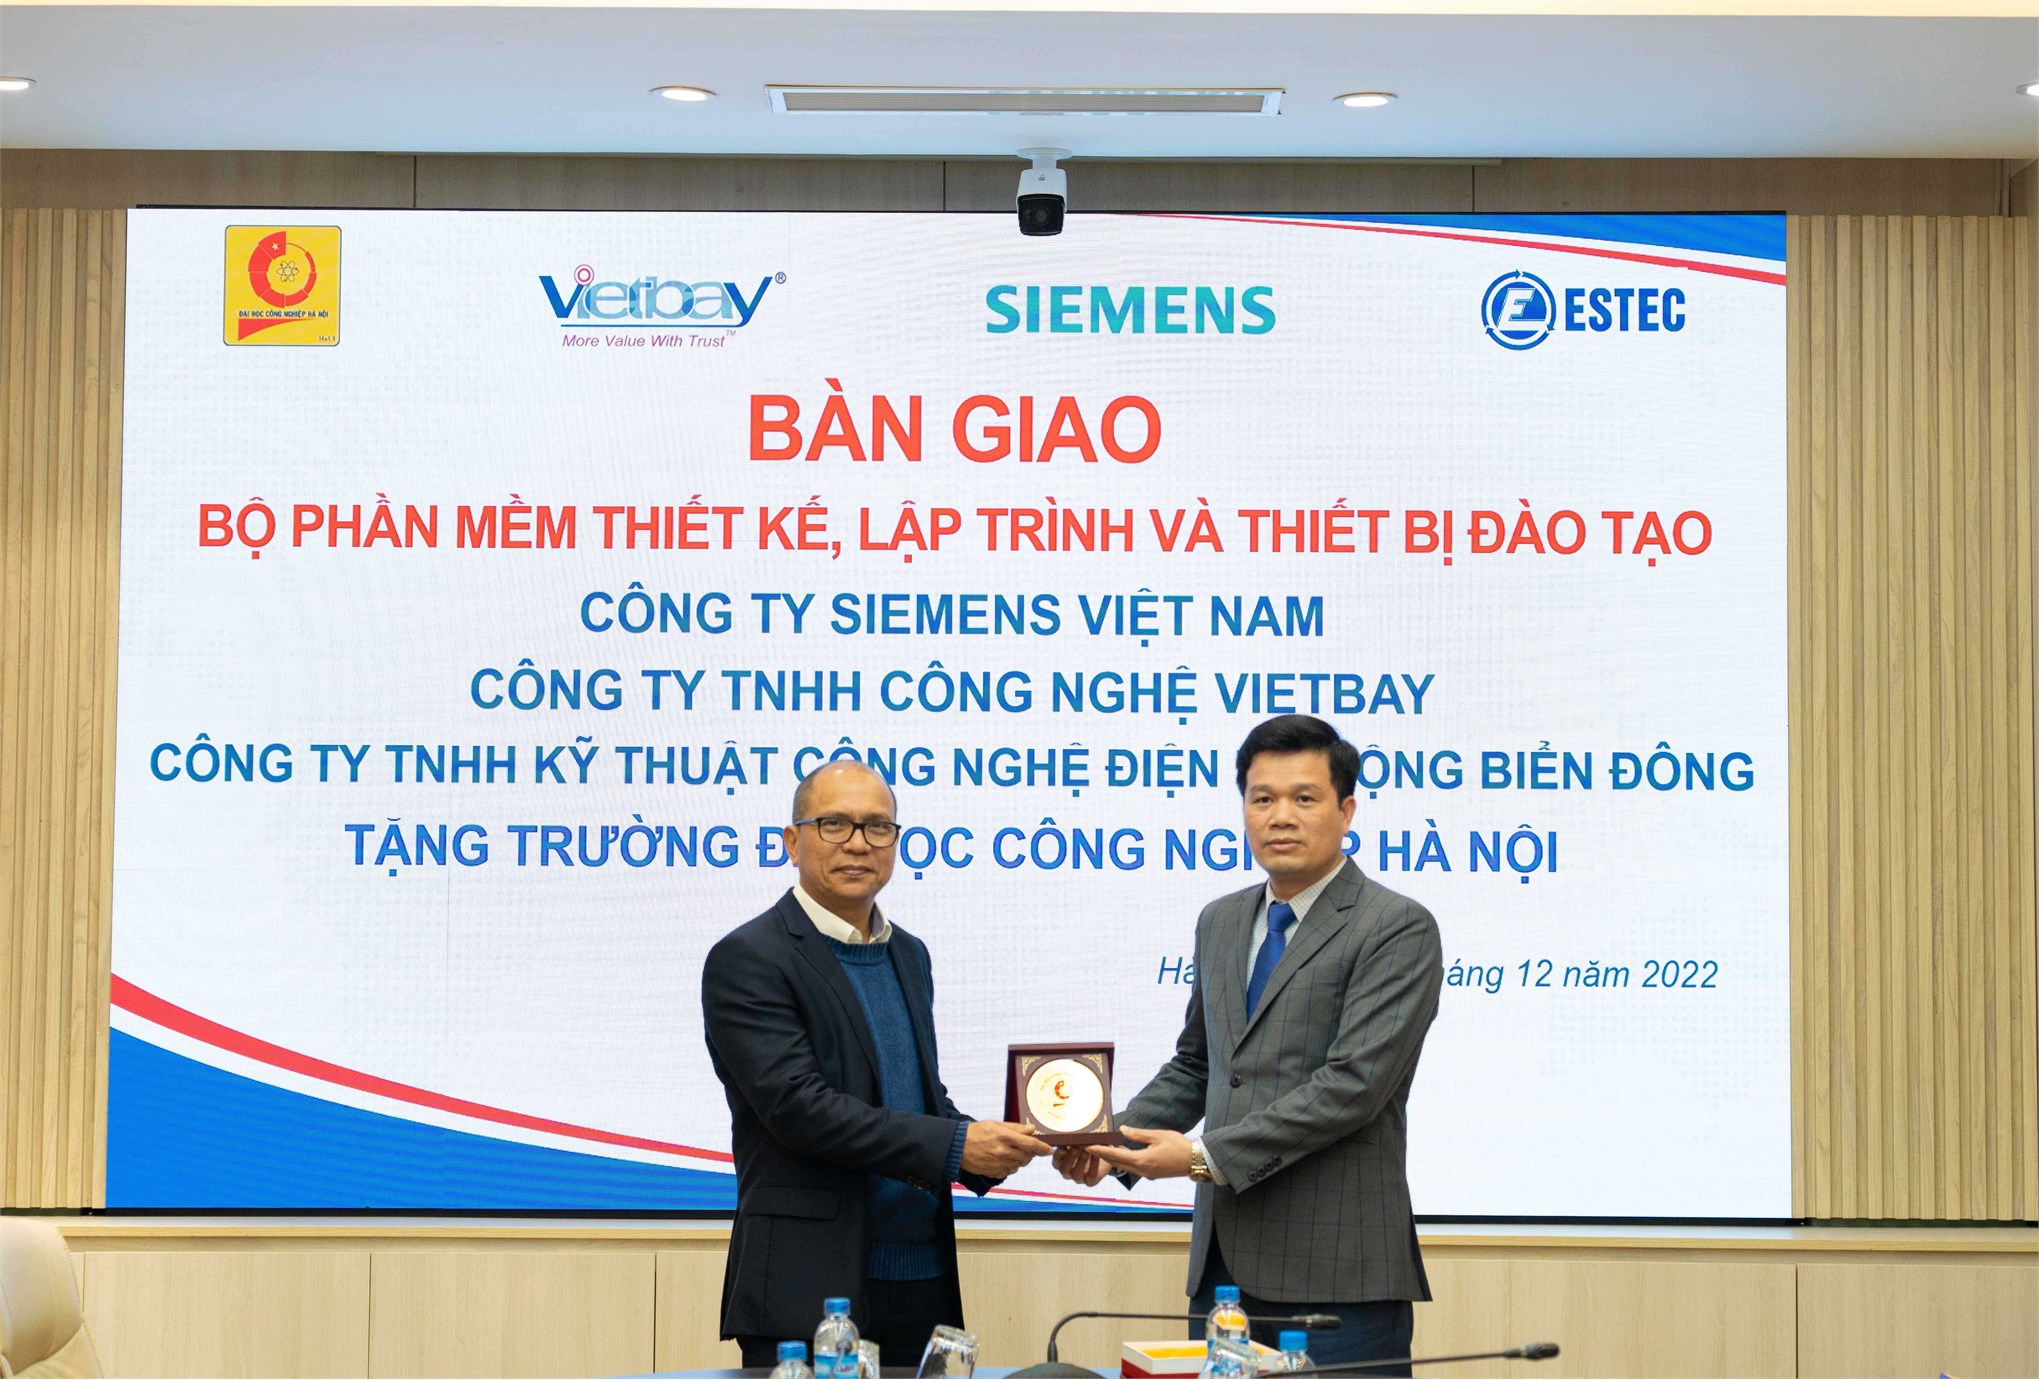 Đại học Công nghiệp Hà Nội nhận bàn giao bộ phần mềm thiết kế, lập trình và thiết bị đào tạo hãng Siemens tài trợ